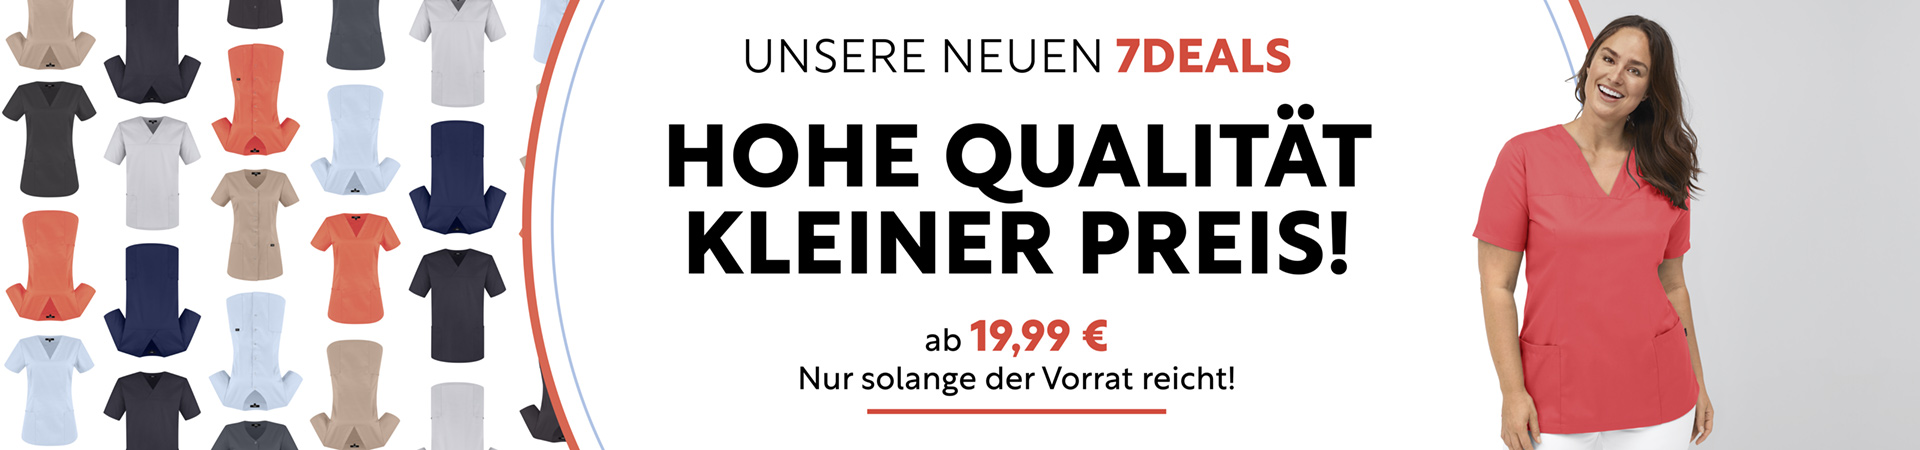 Hohe Qualität, kleiner Preis - unsere neuen 7deals! Ab 19,99 € - nur solange der Vorrat reicht! >>